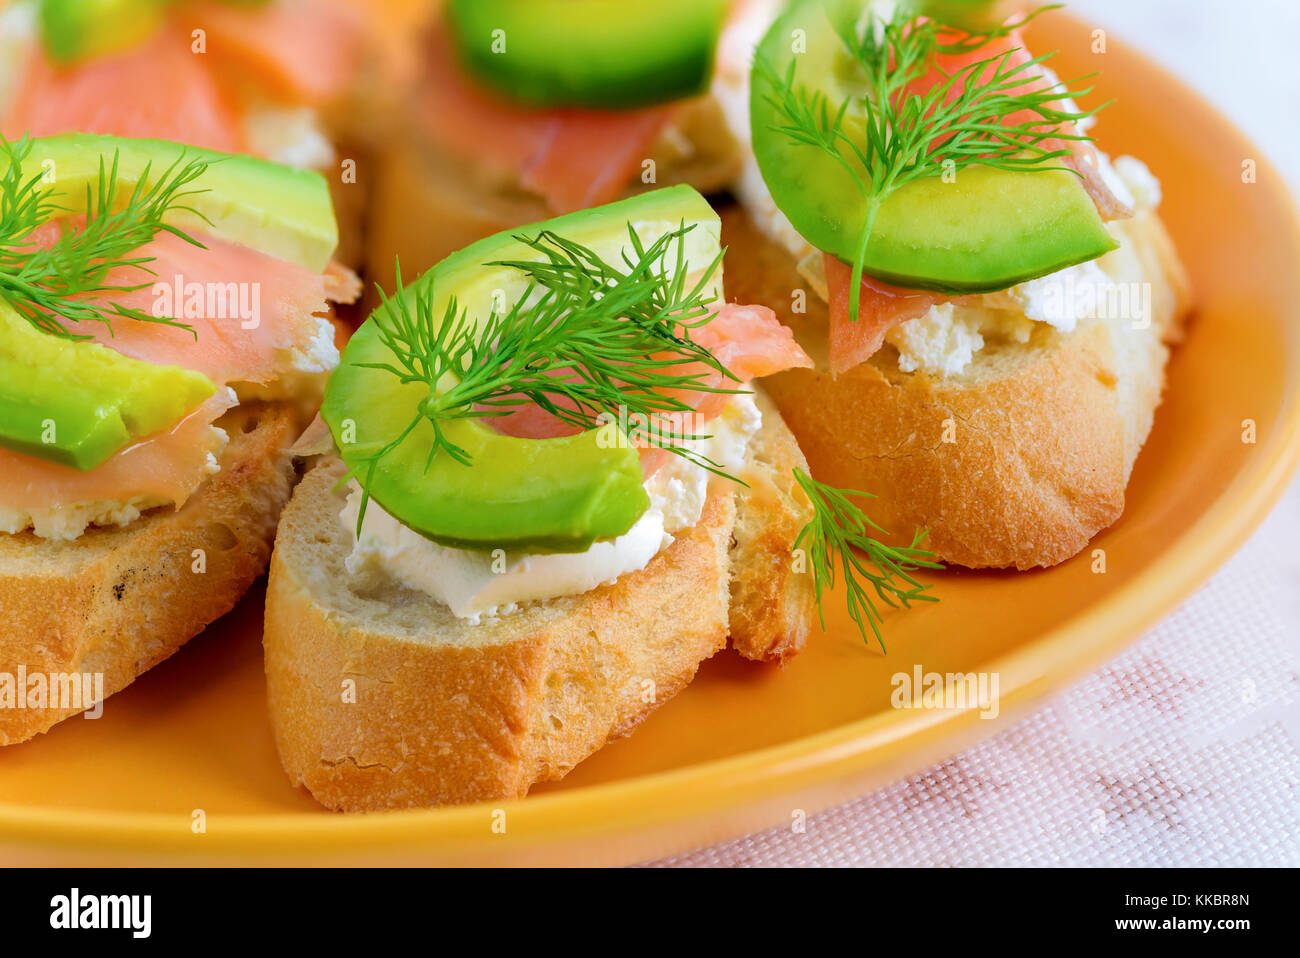 Bruschetta, snack-sandwiches avec du fromage blanc, saumon fumé et morceaux d'avocat décoré par de l'aneth. Banque D'Images